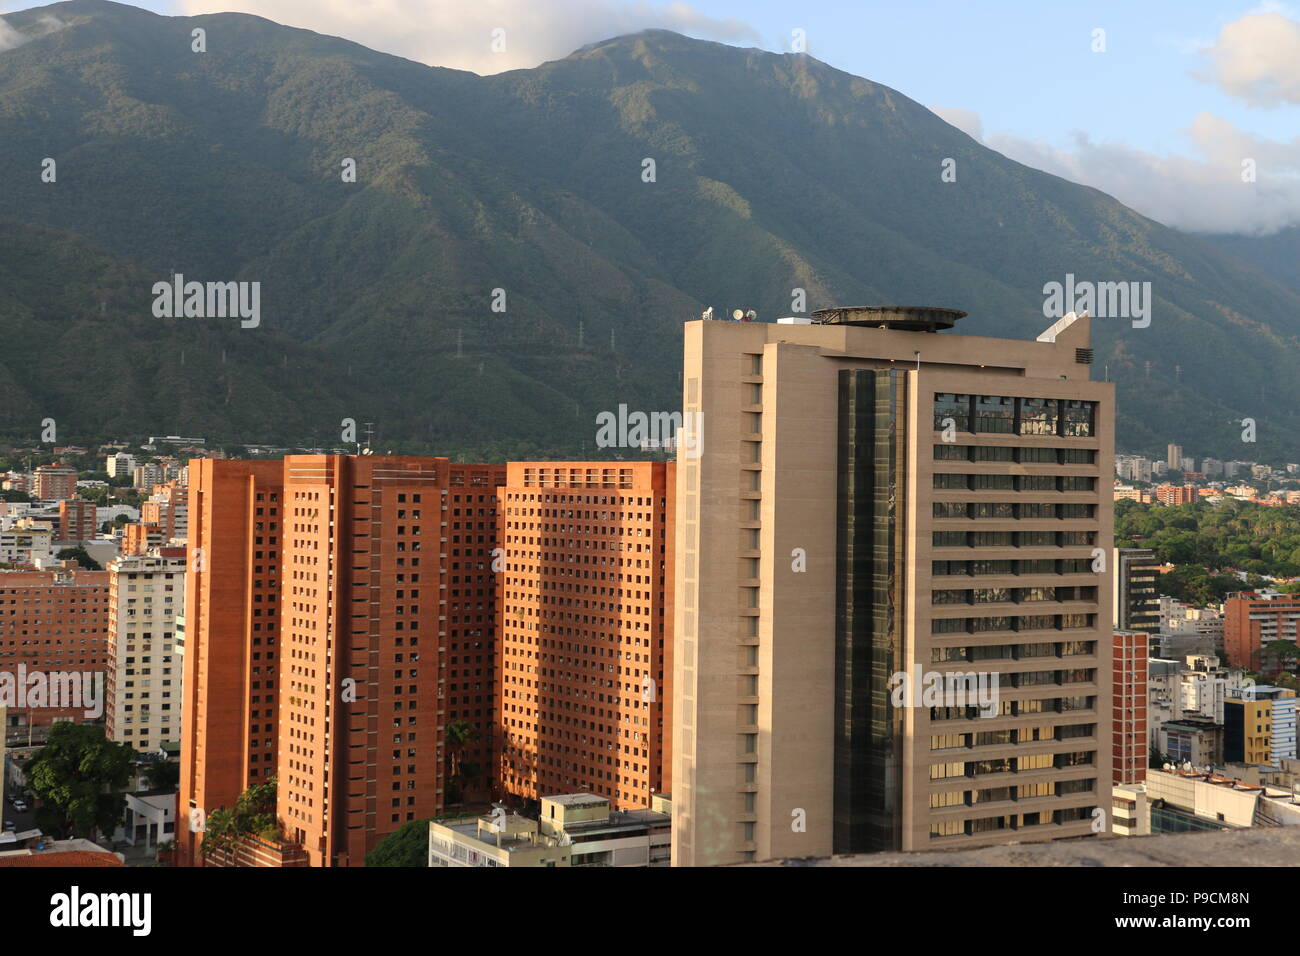 Buildings in Caracas Venezuela, photo taken from the Sabana Grande Area, Centro Comercial El Recreo. Vicente Quintero and Marcos Kirschstein Stock Photo